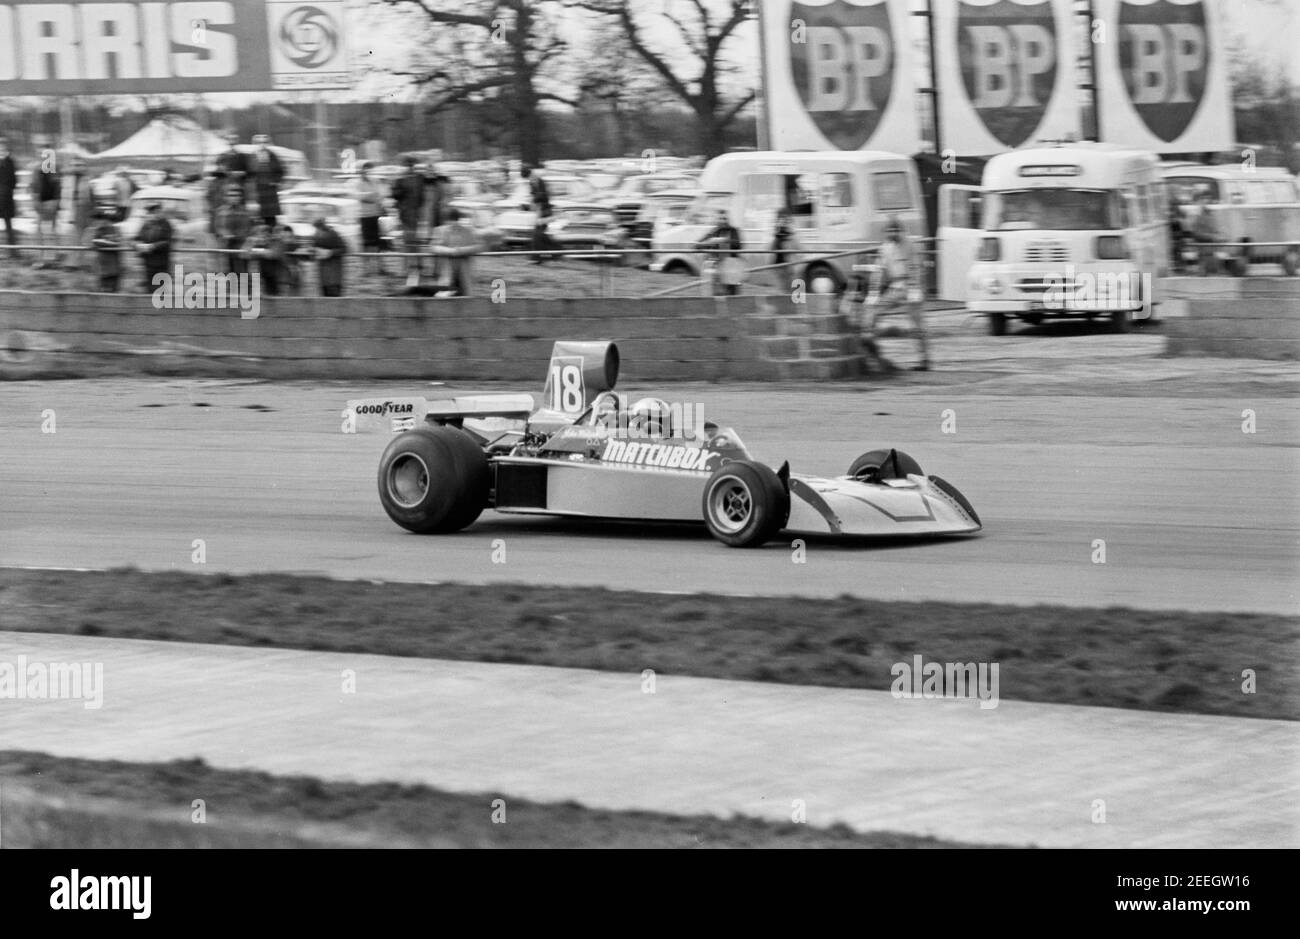 Course de voiture 18 à Silverstone, 12/04/75 Banque D'Images